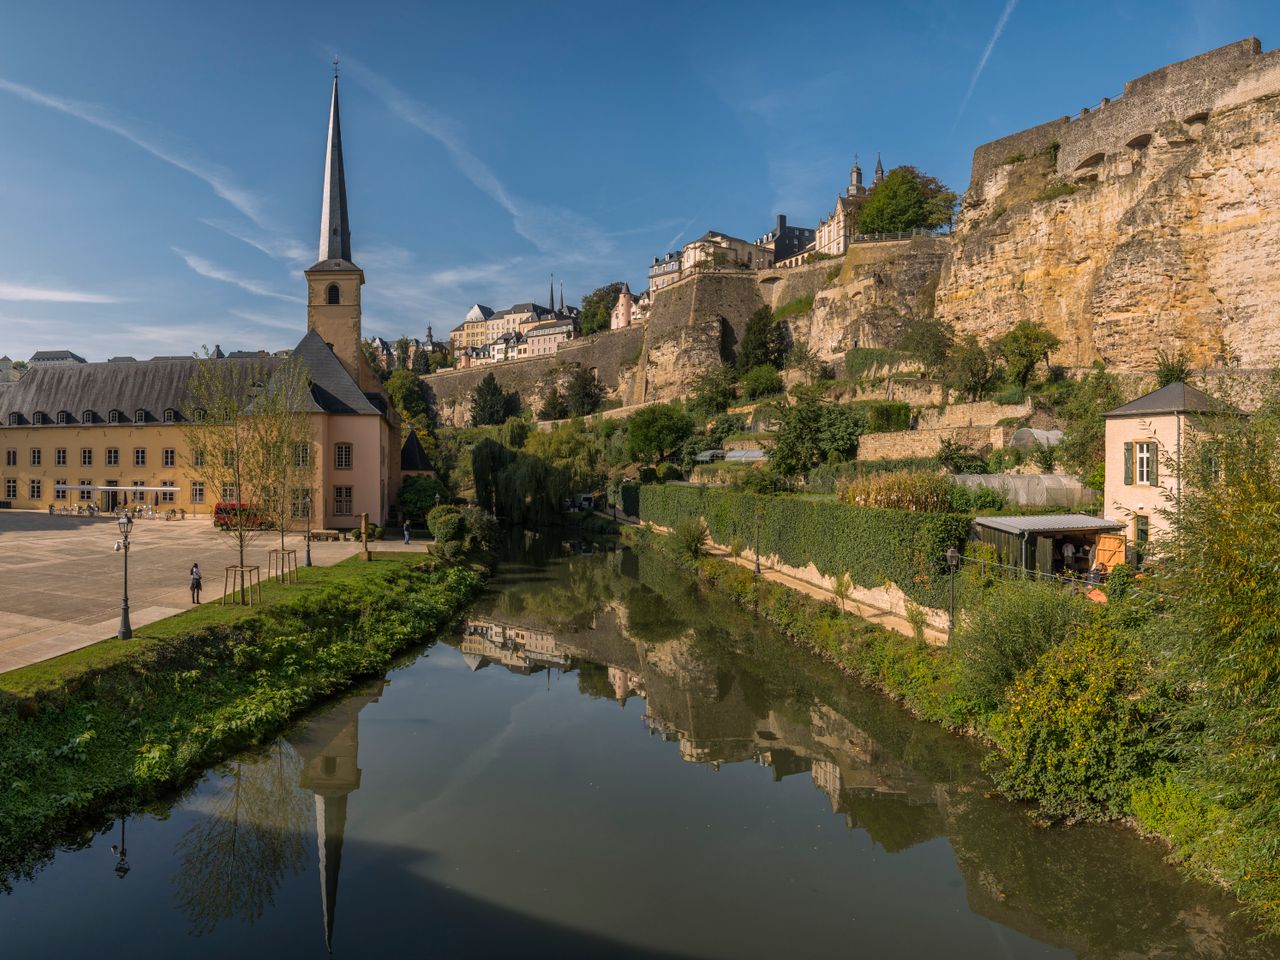 Entdeckertour Luxemburg-Unesco Weltkulturerbe |3 Tg.